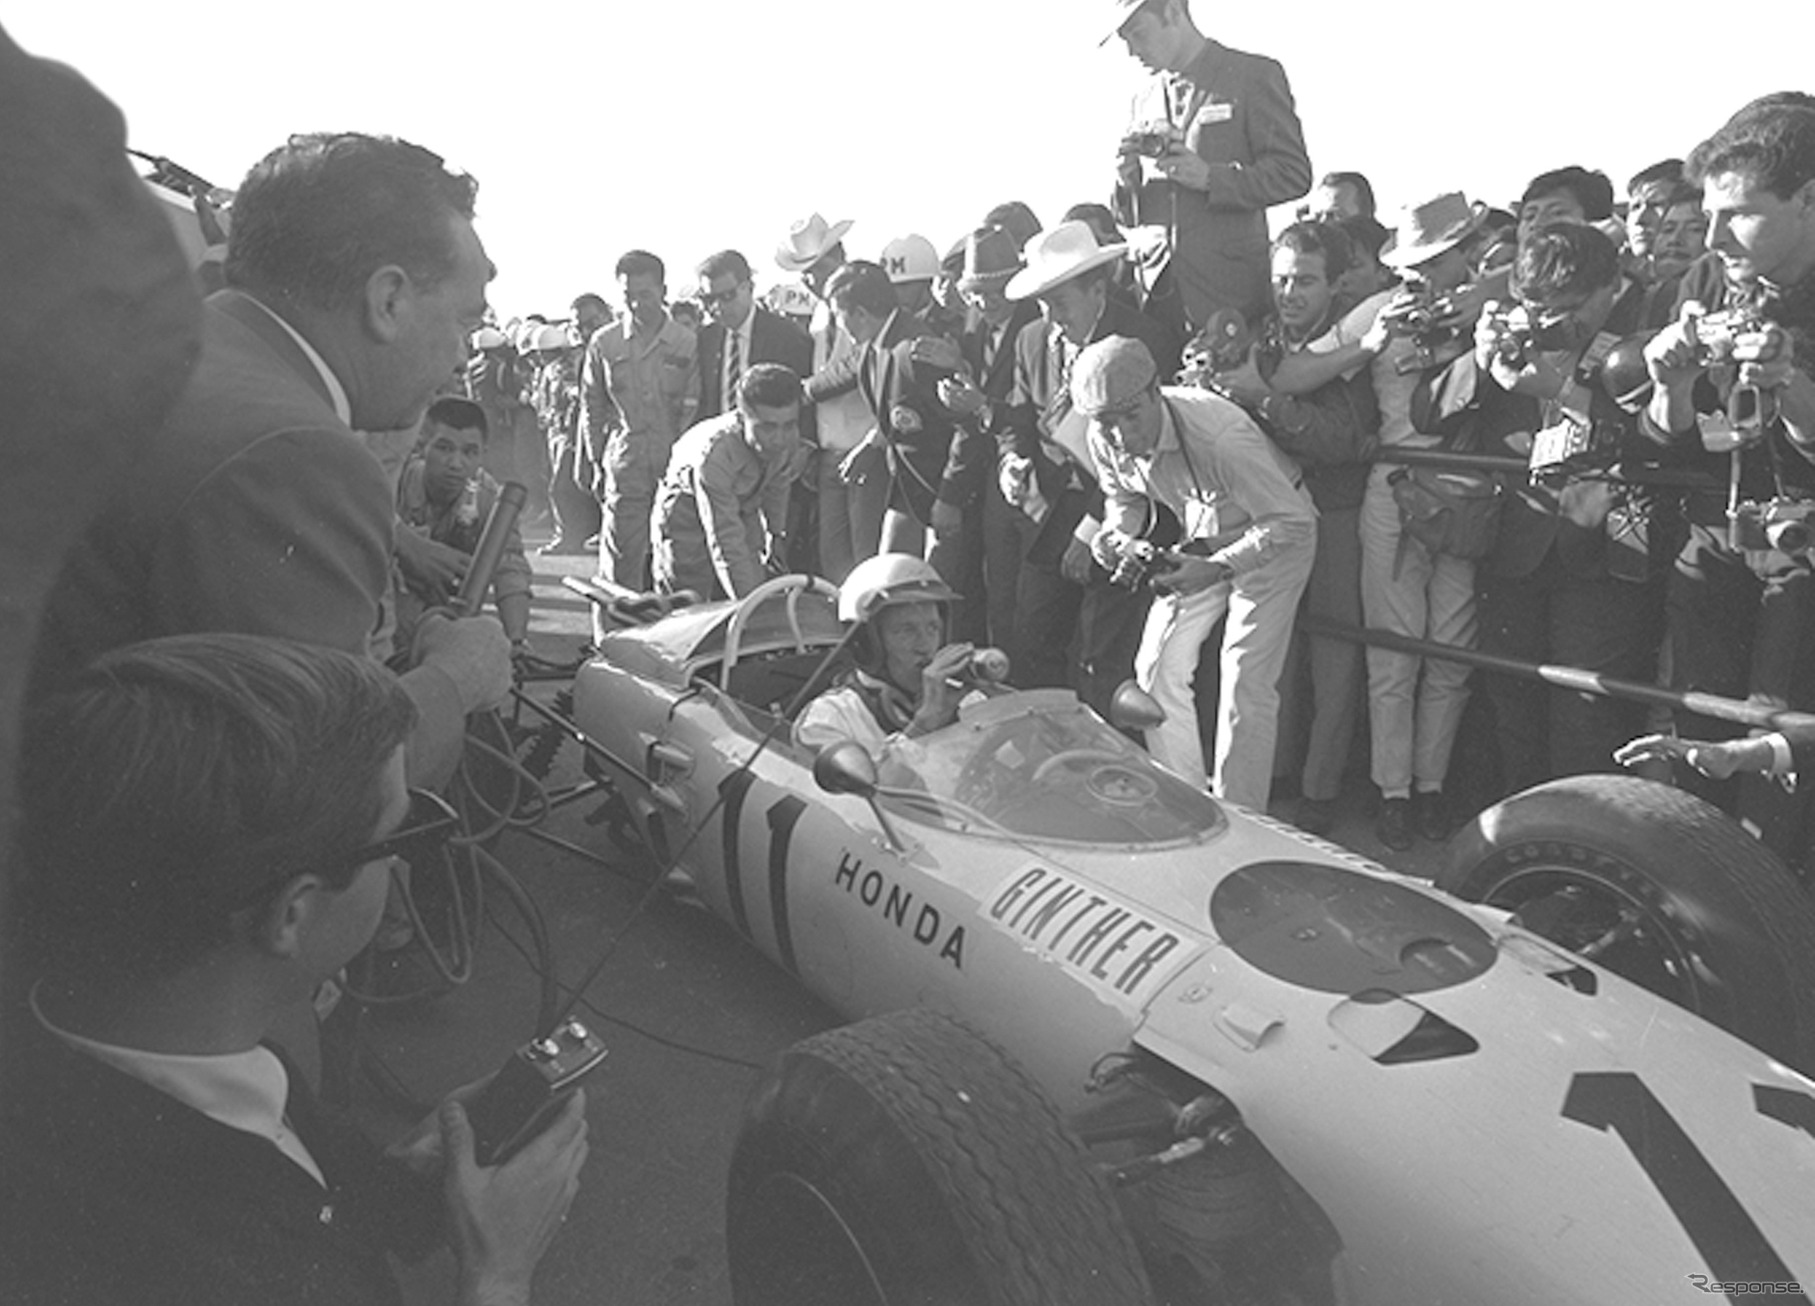 1965年F1メキシコGP、ホンダRA272の#11 R. ギンサー（予選3位、決勝1位）。